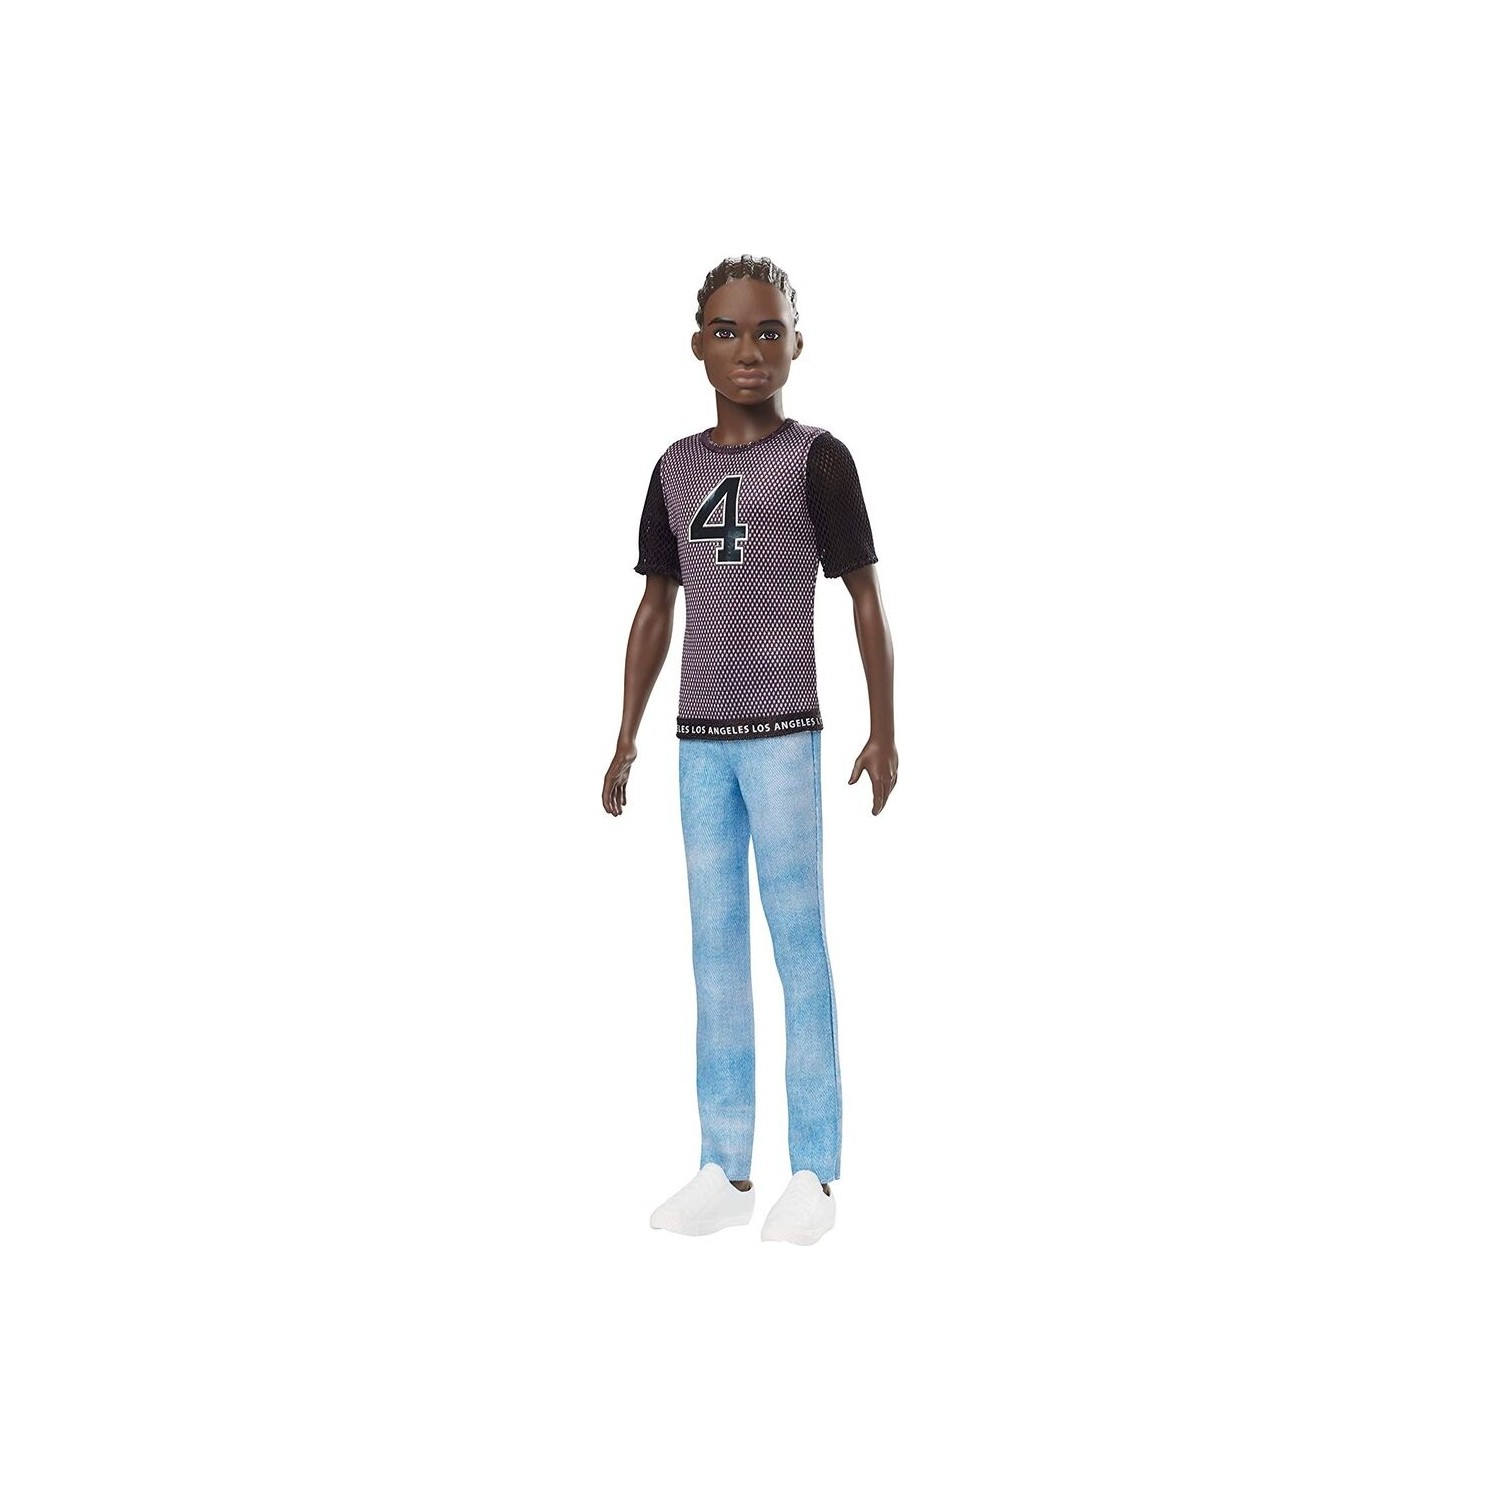 Кукла Barbie Кен DWK44-GDV13 ken honda